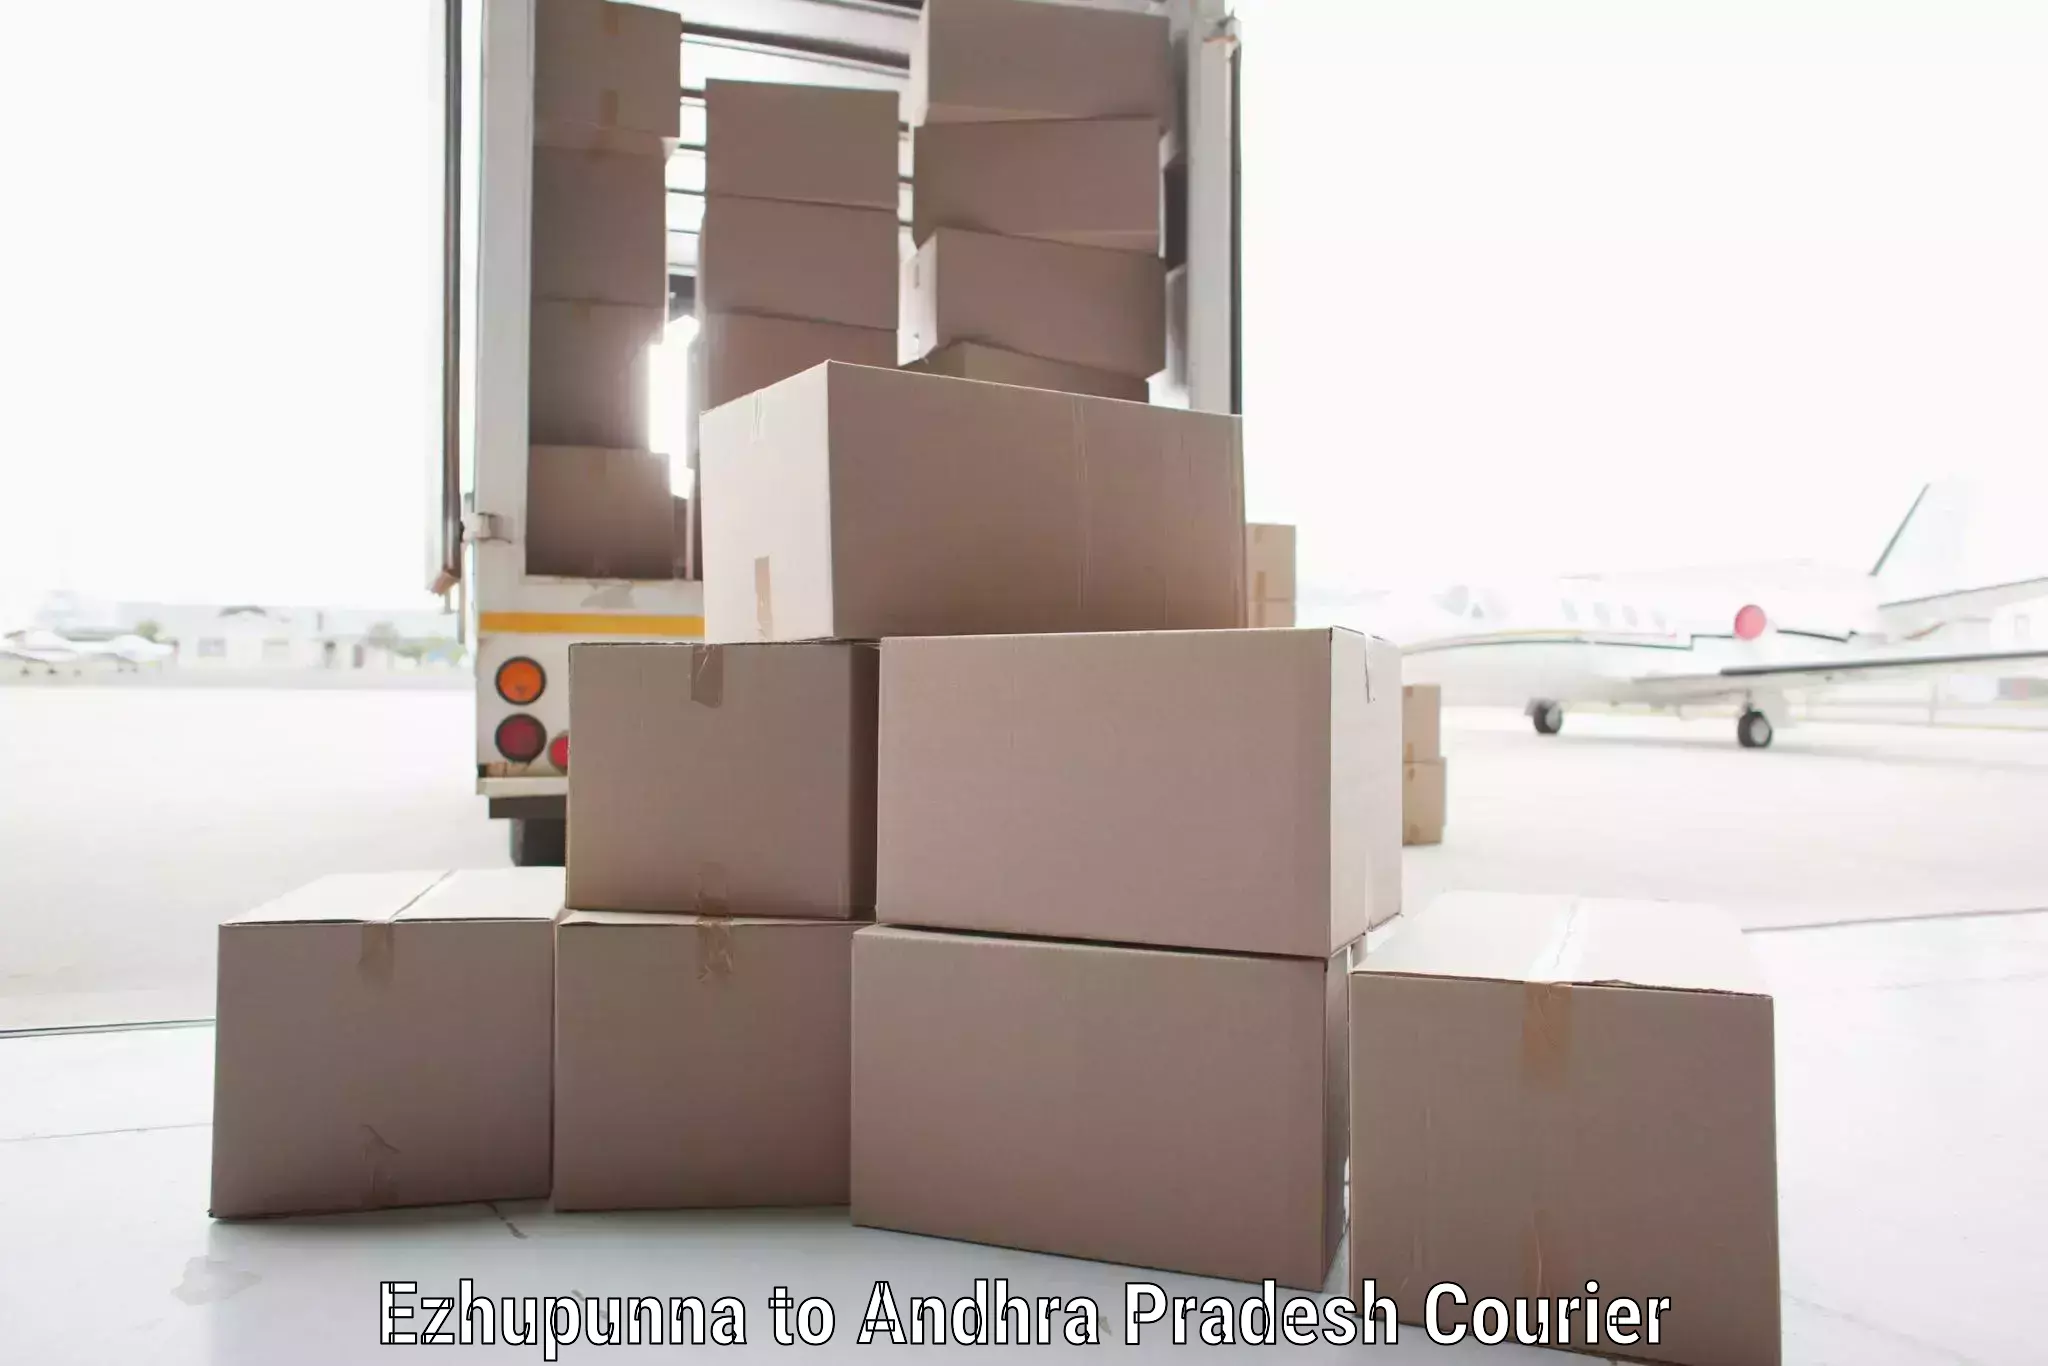 High-capacity courier solutions Ezhupunna to Andhra Pradesh